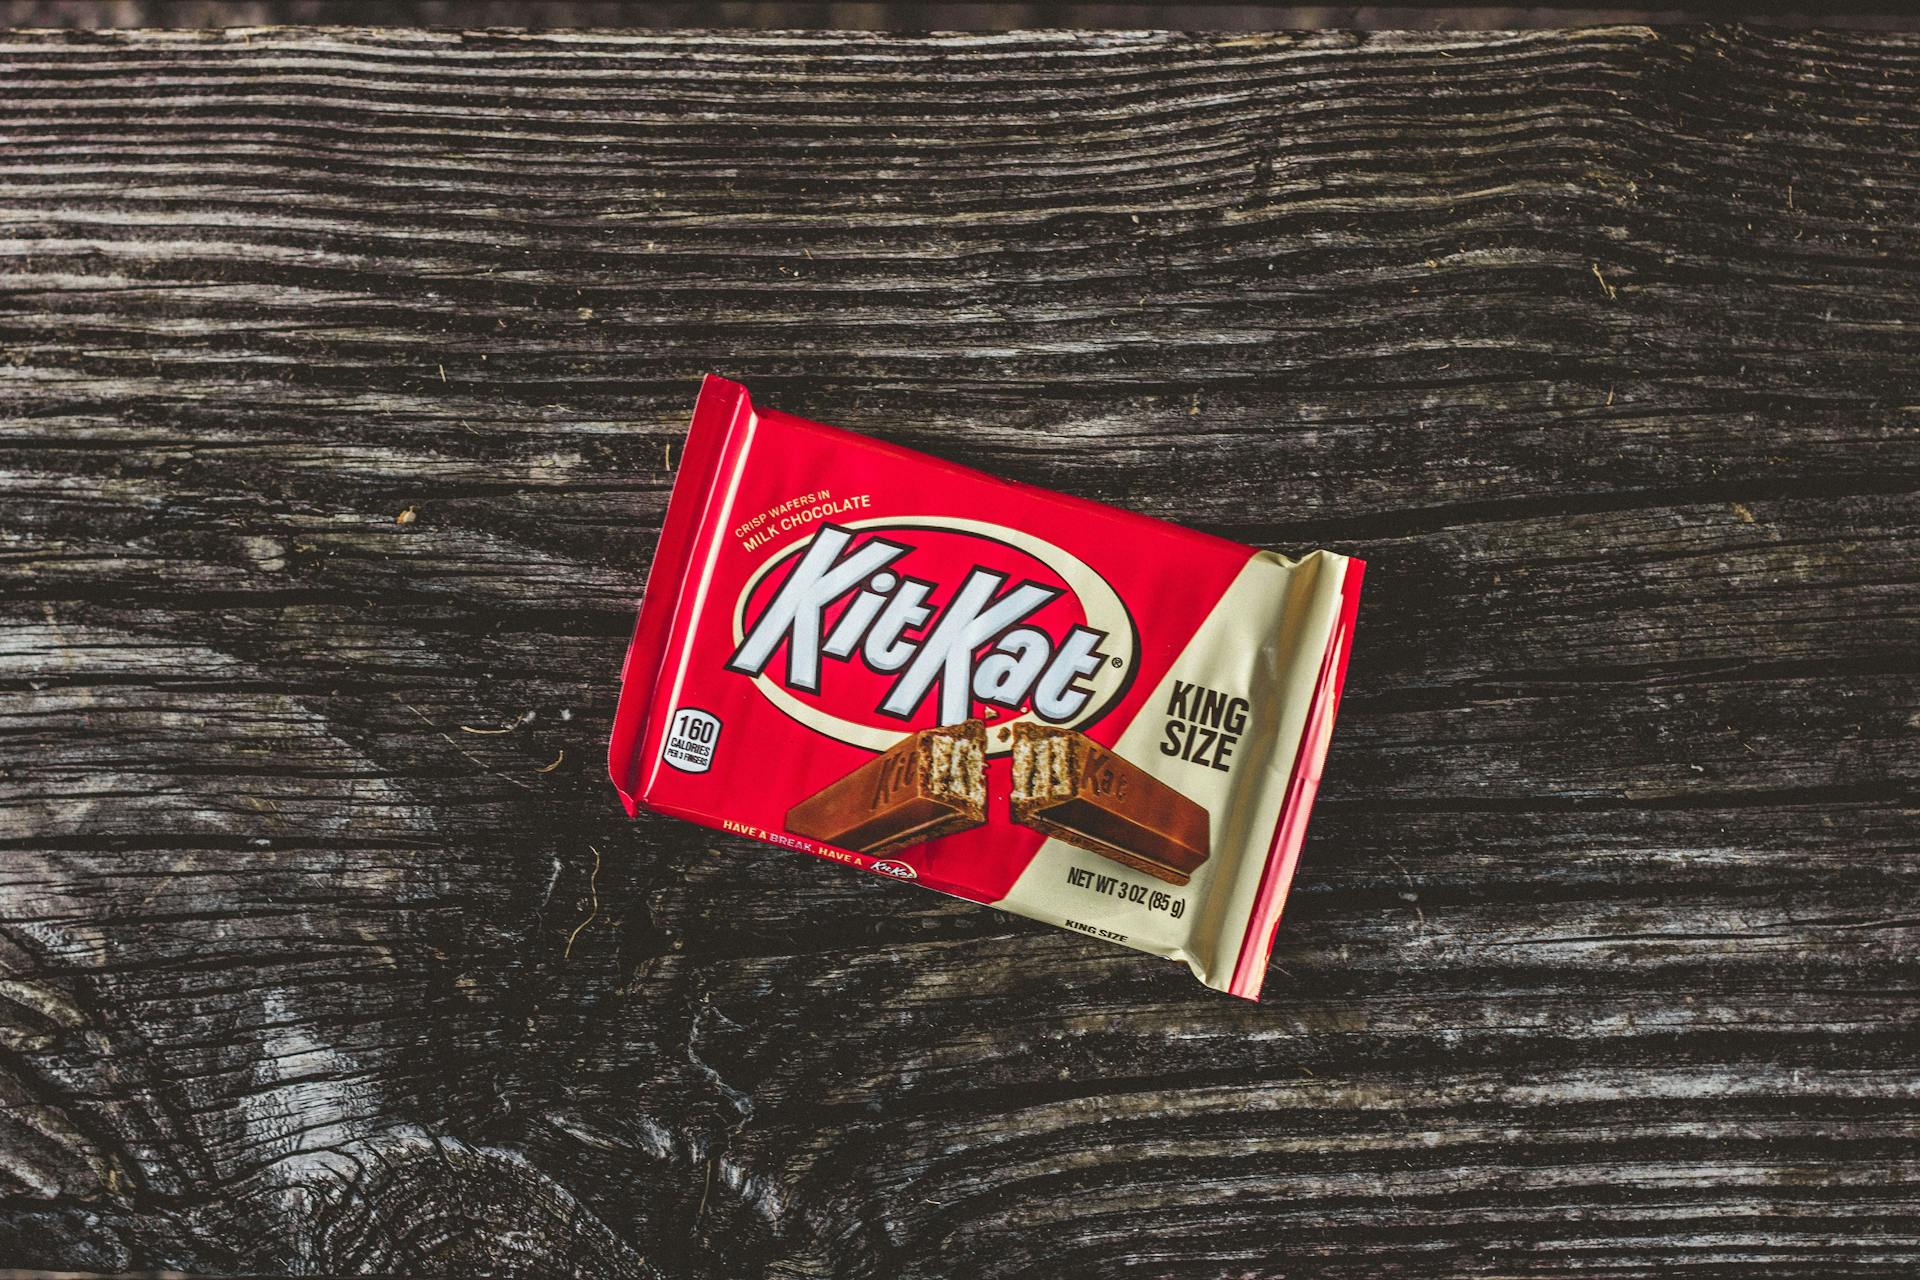 Schokoriegel KitKat nicht als Marke eintragungsfähig